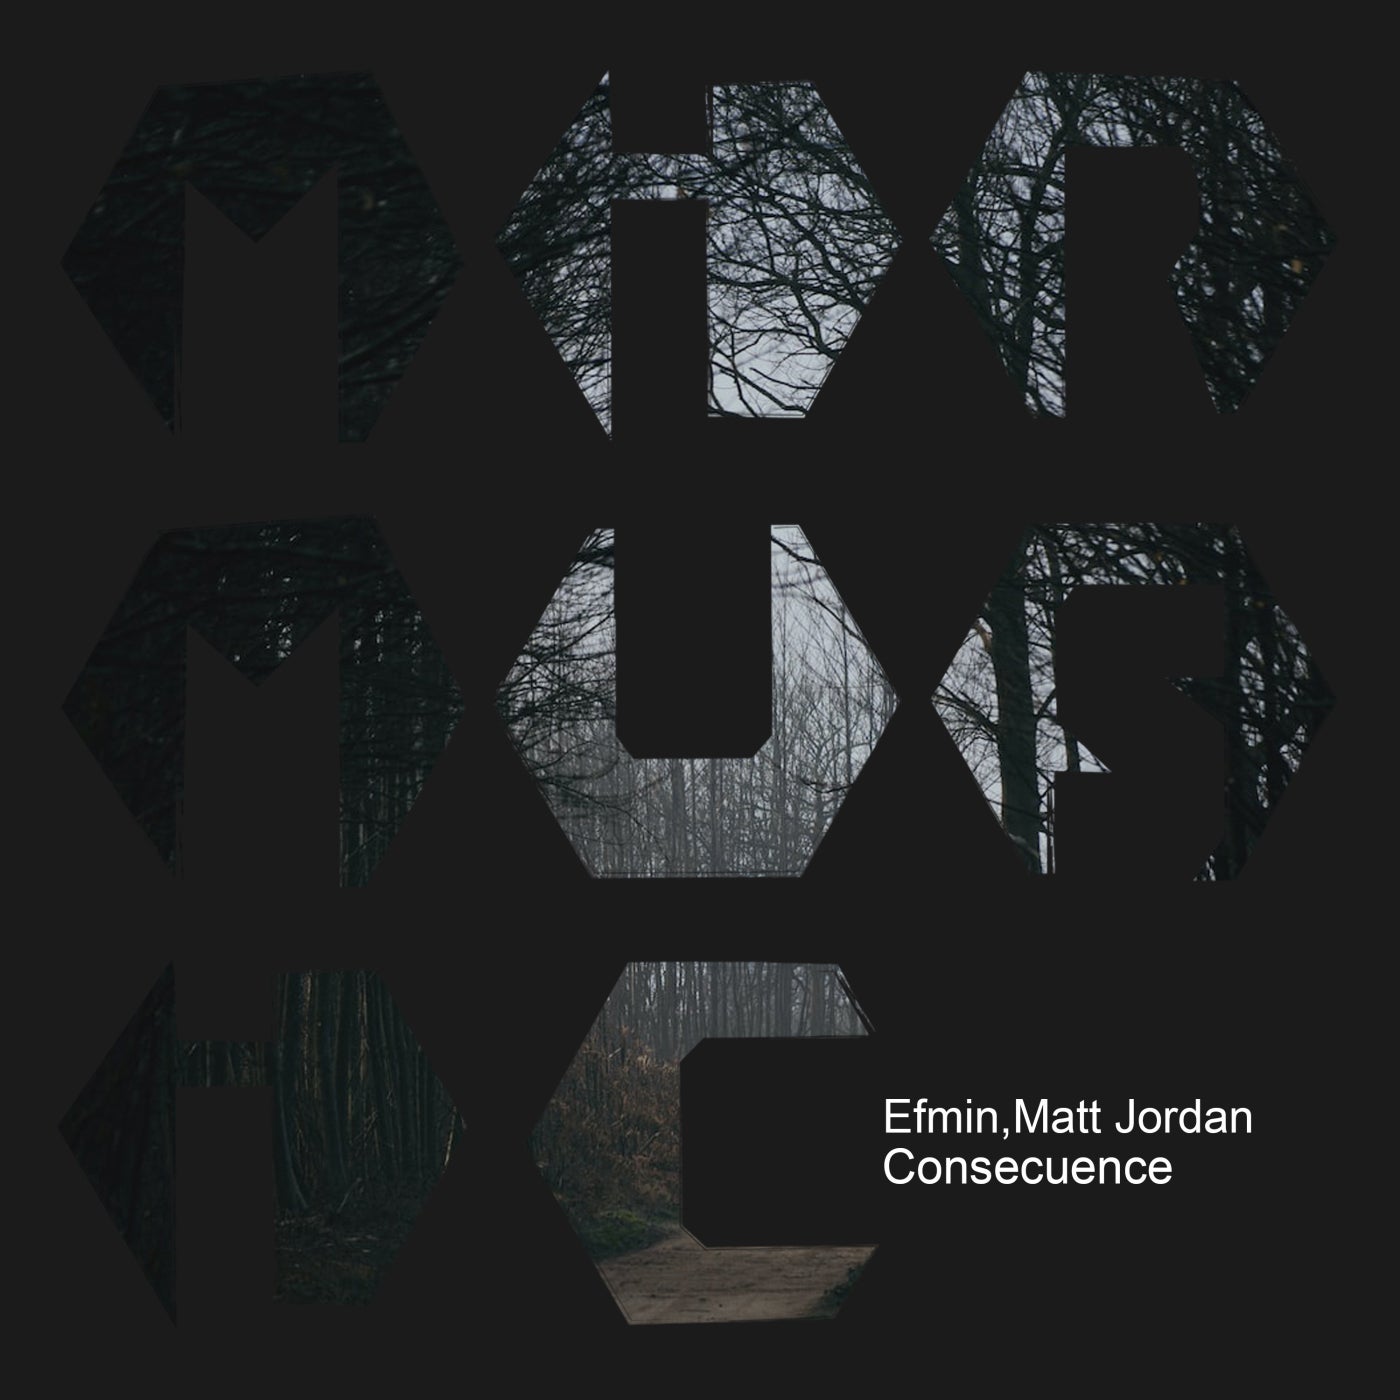 Matt Jordan, Efmin – Consecuence [MIRM141]